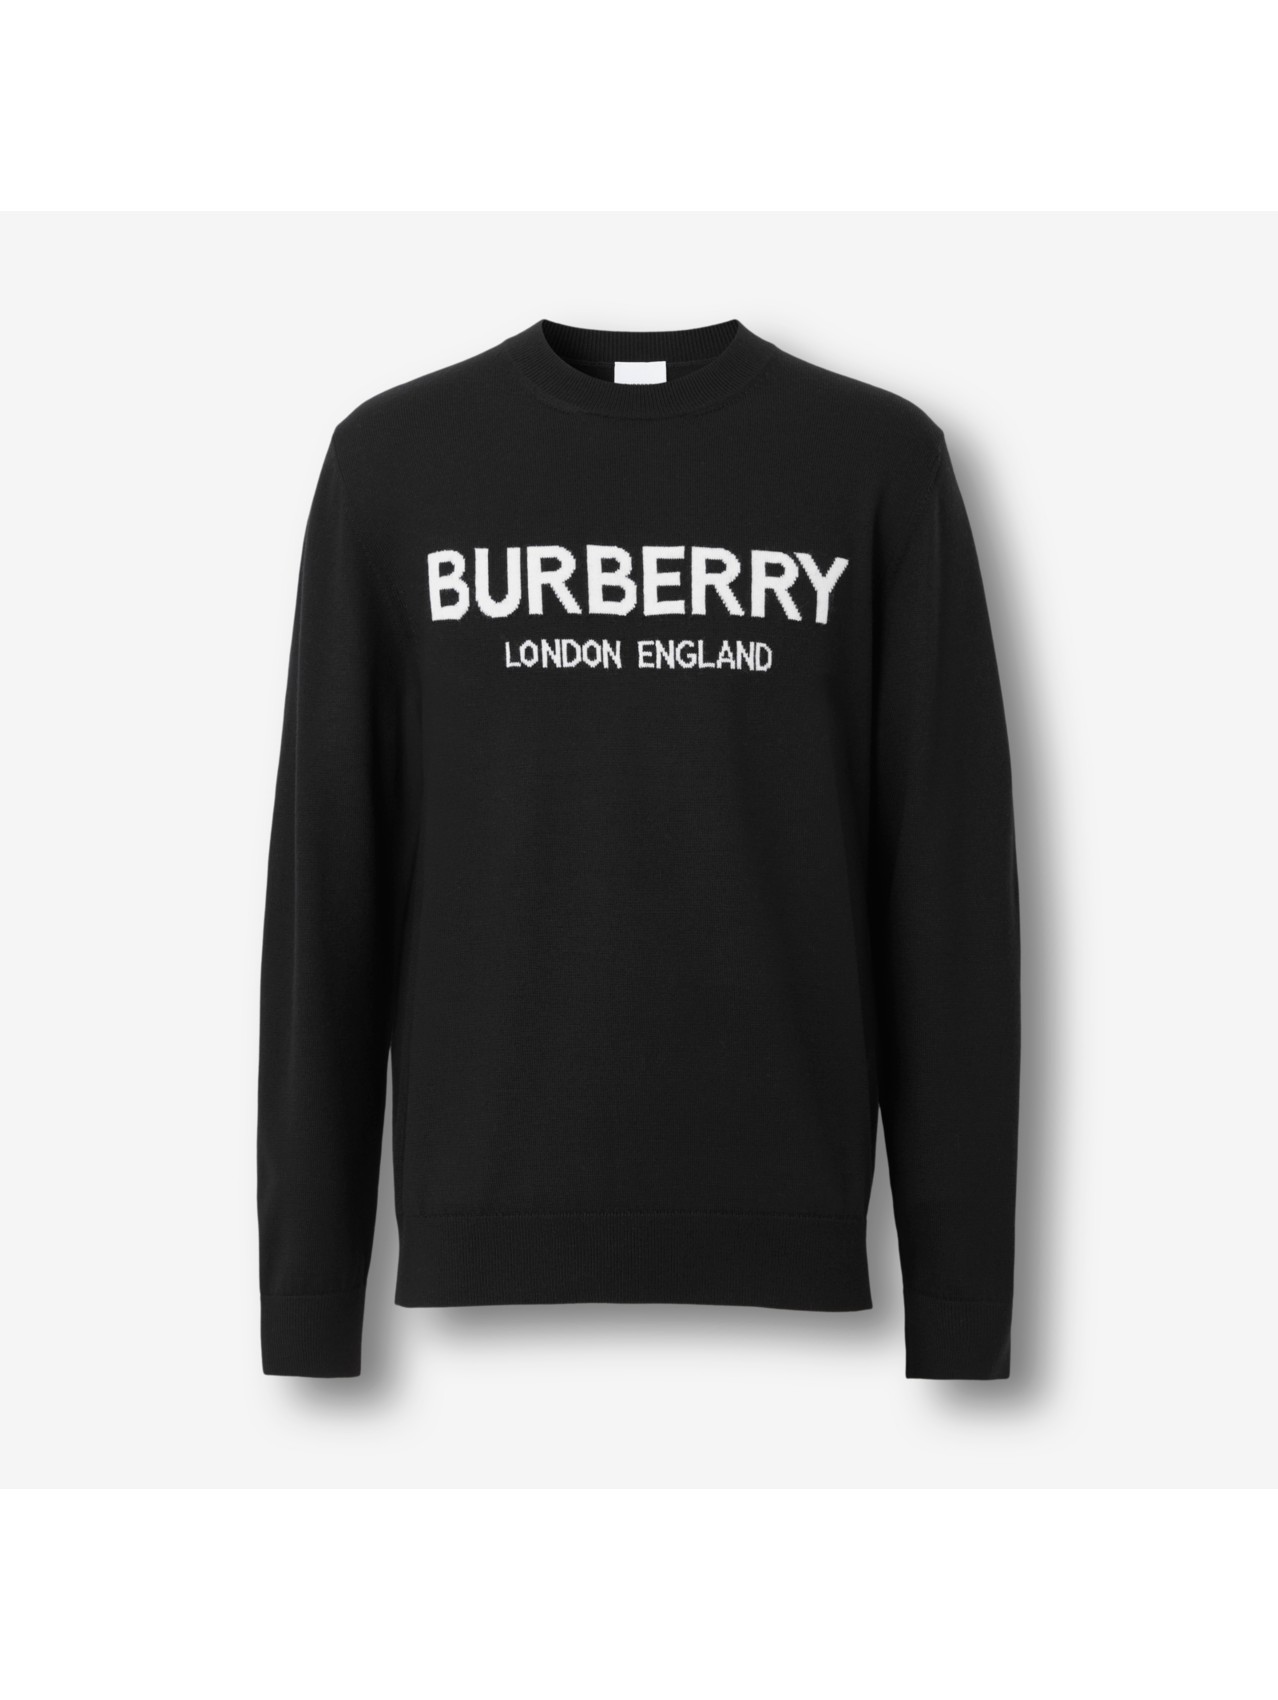 Top 88+ imagen burberry sweatshirt